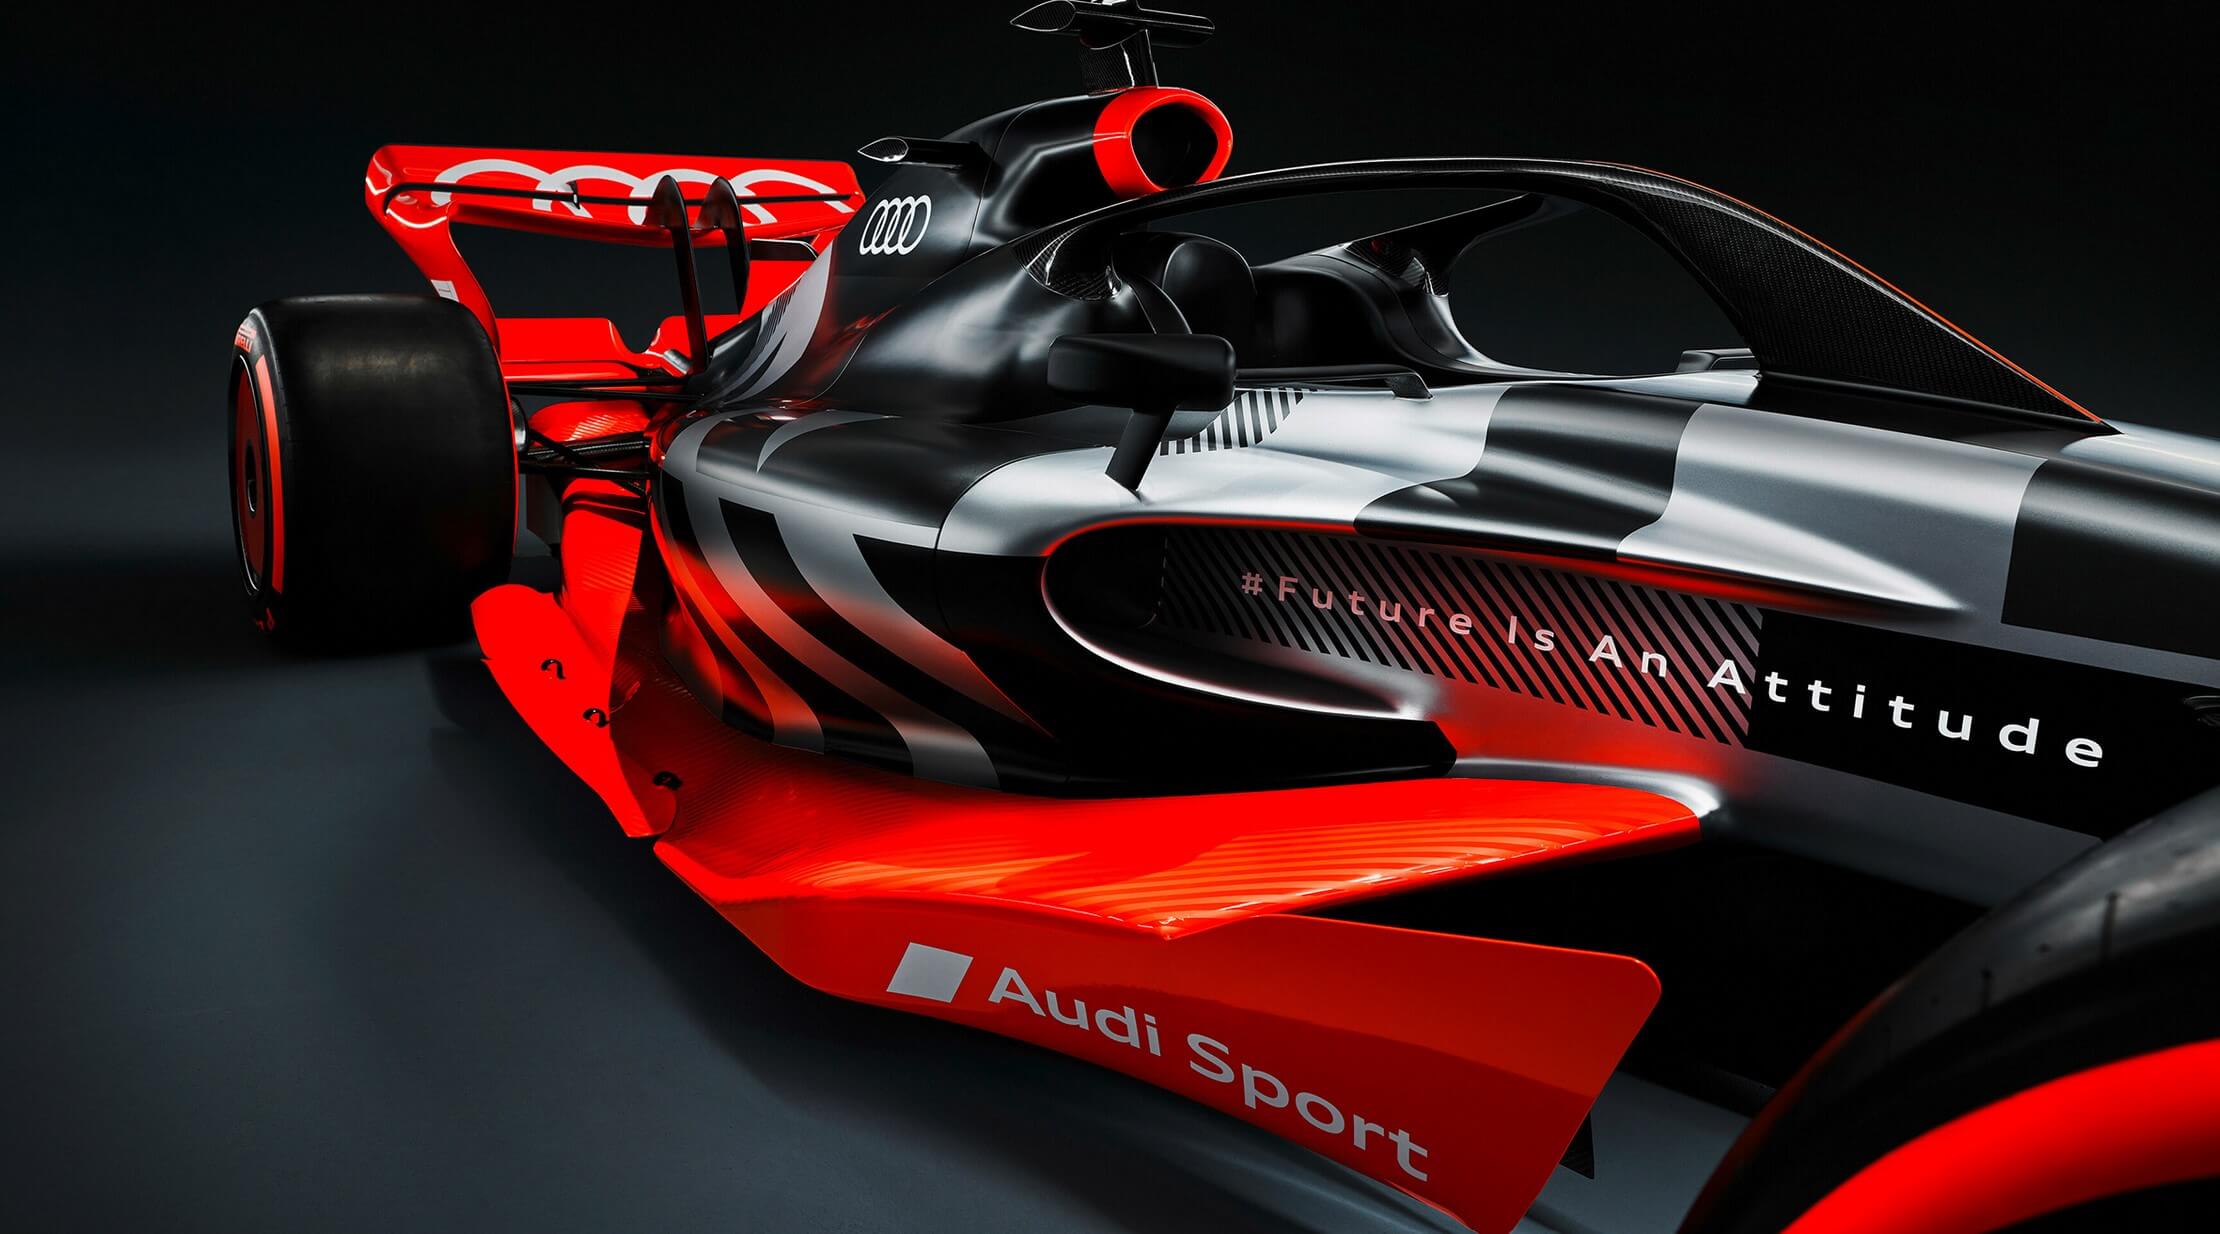 aria-label="Audi F1 team 2026 concept 4"